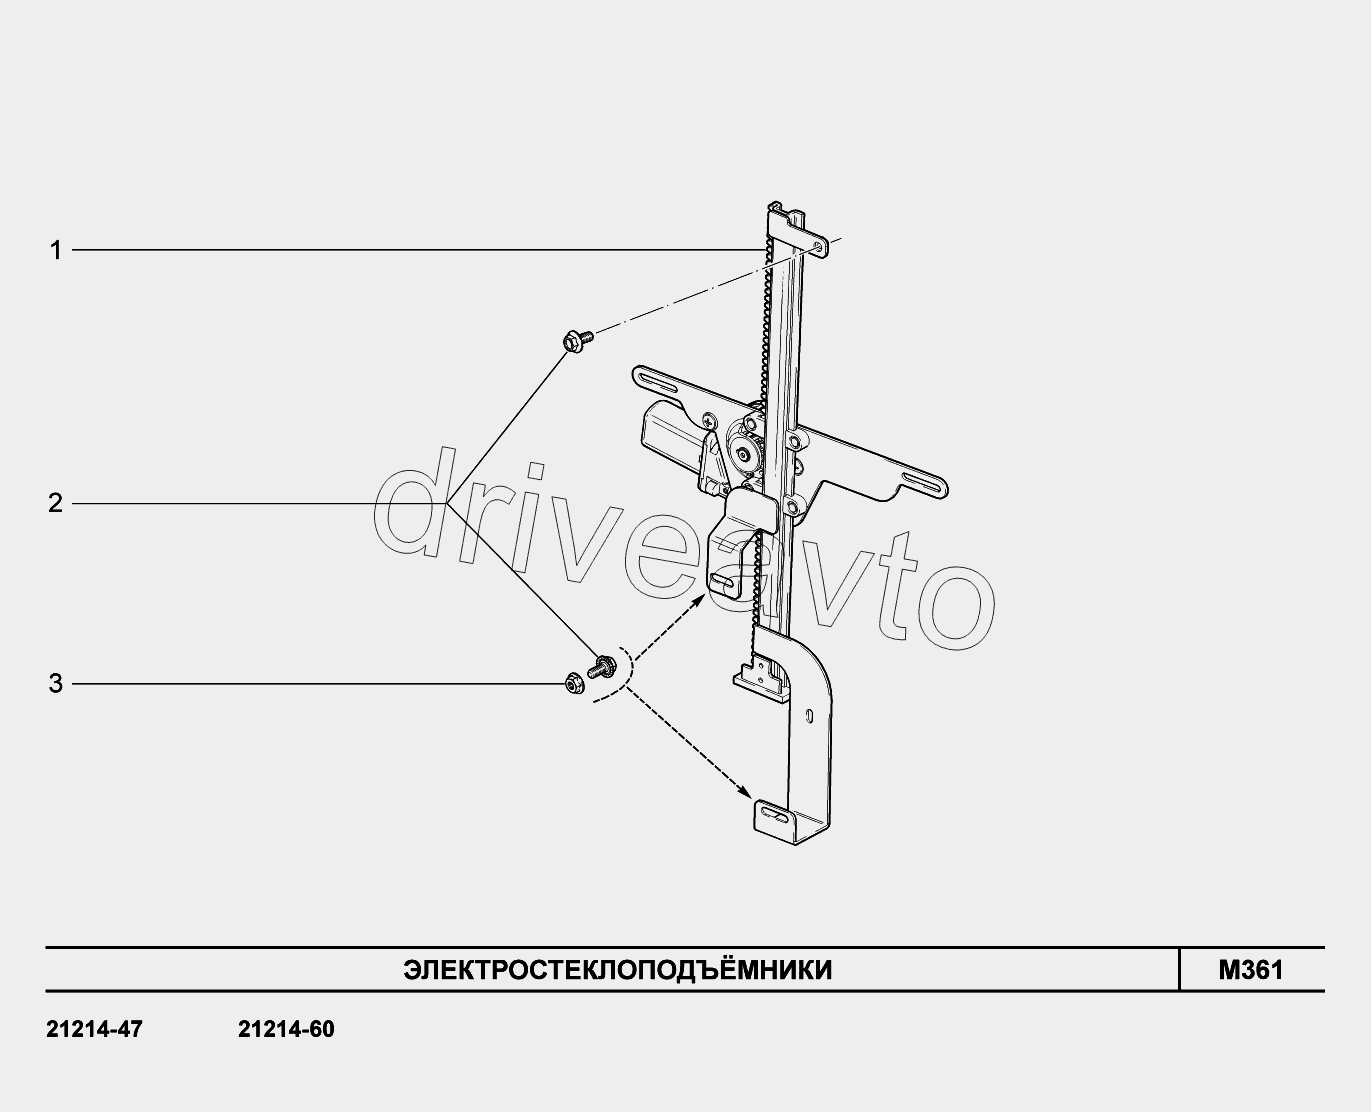 M361. Стеклоподъемники передних дверей